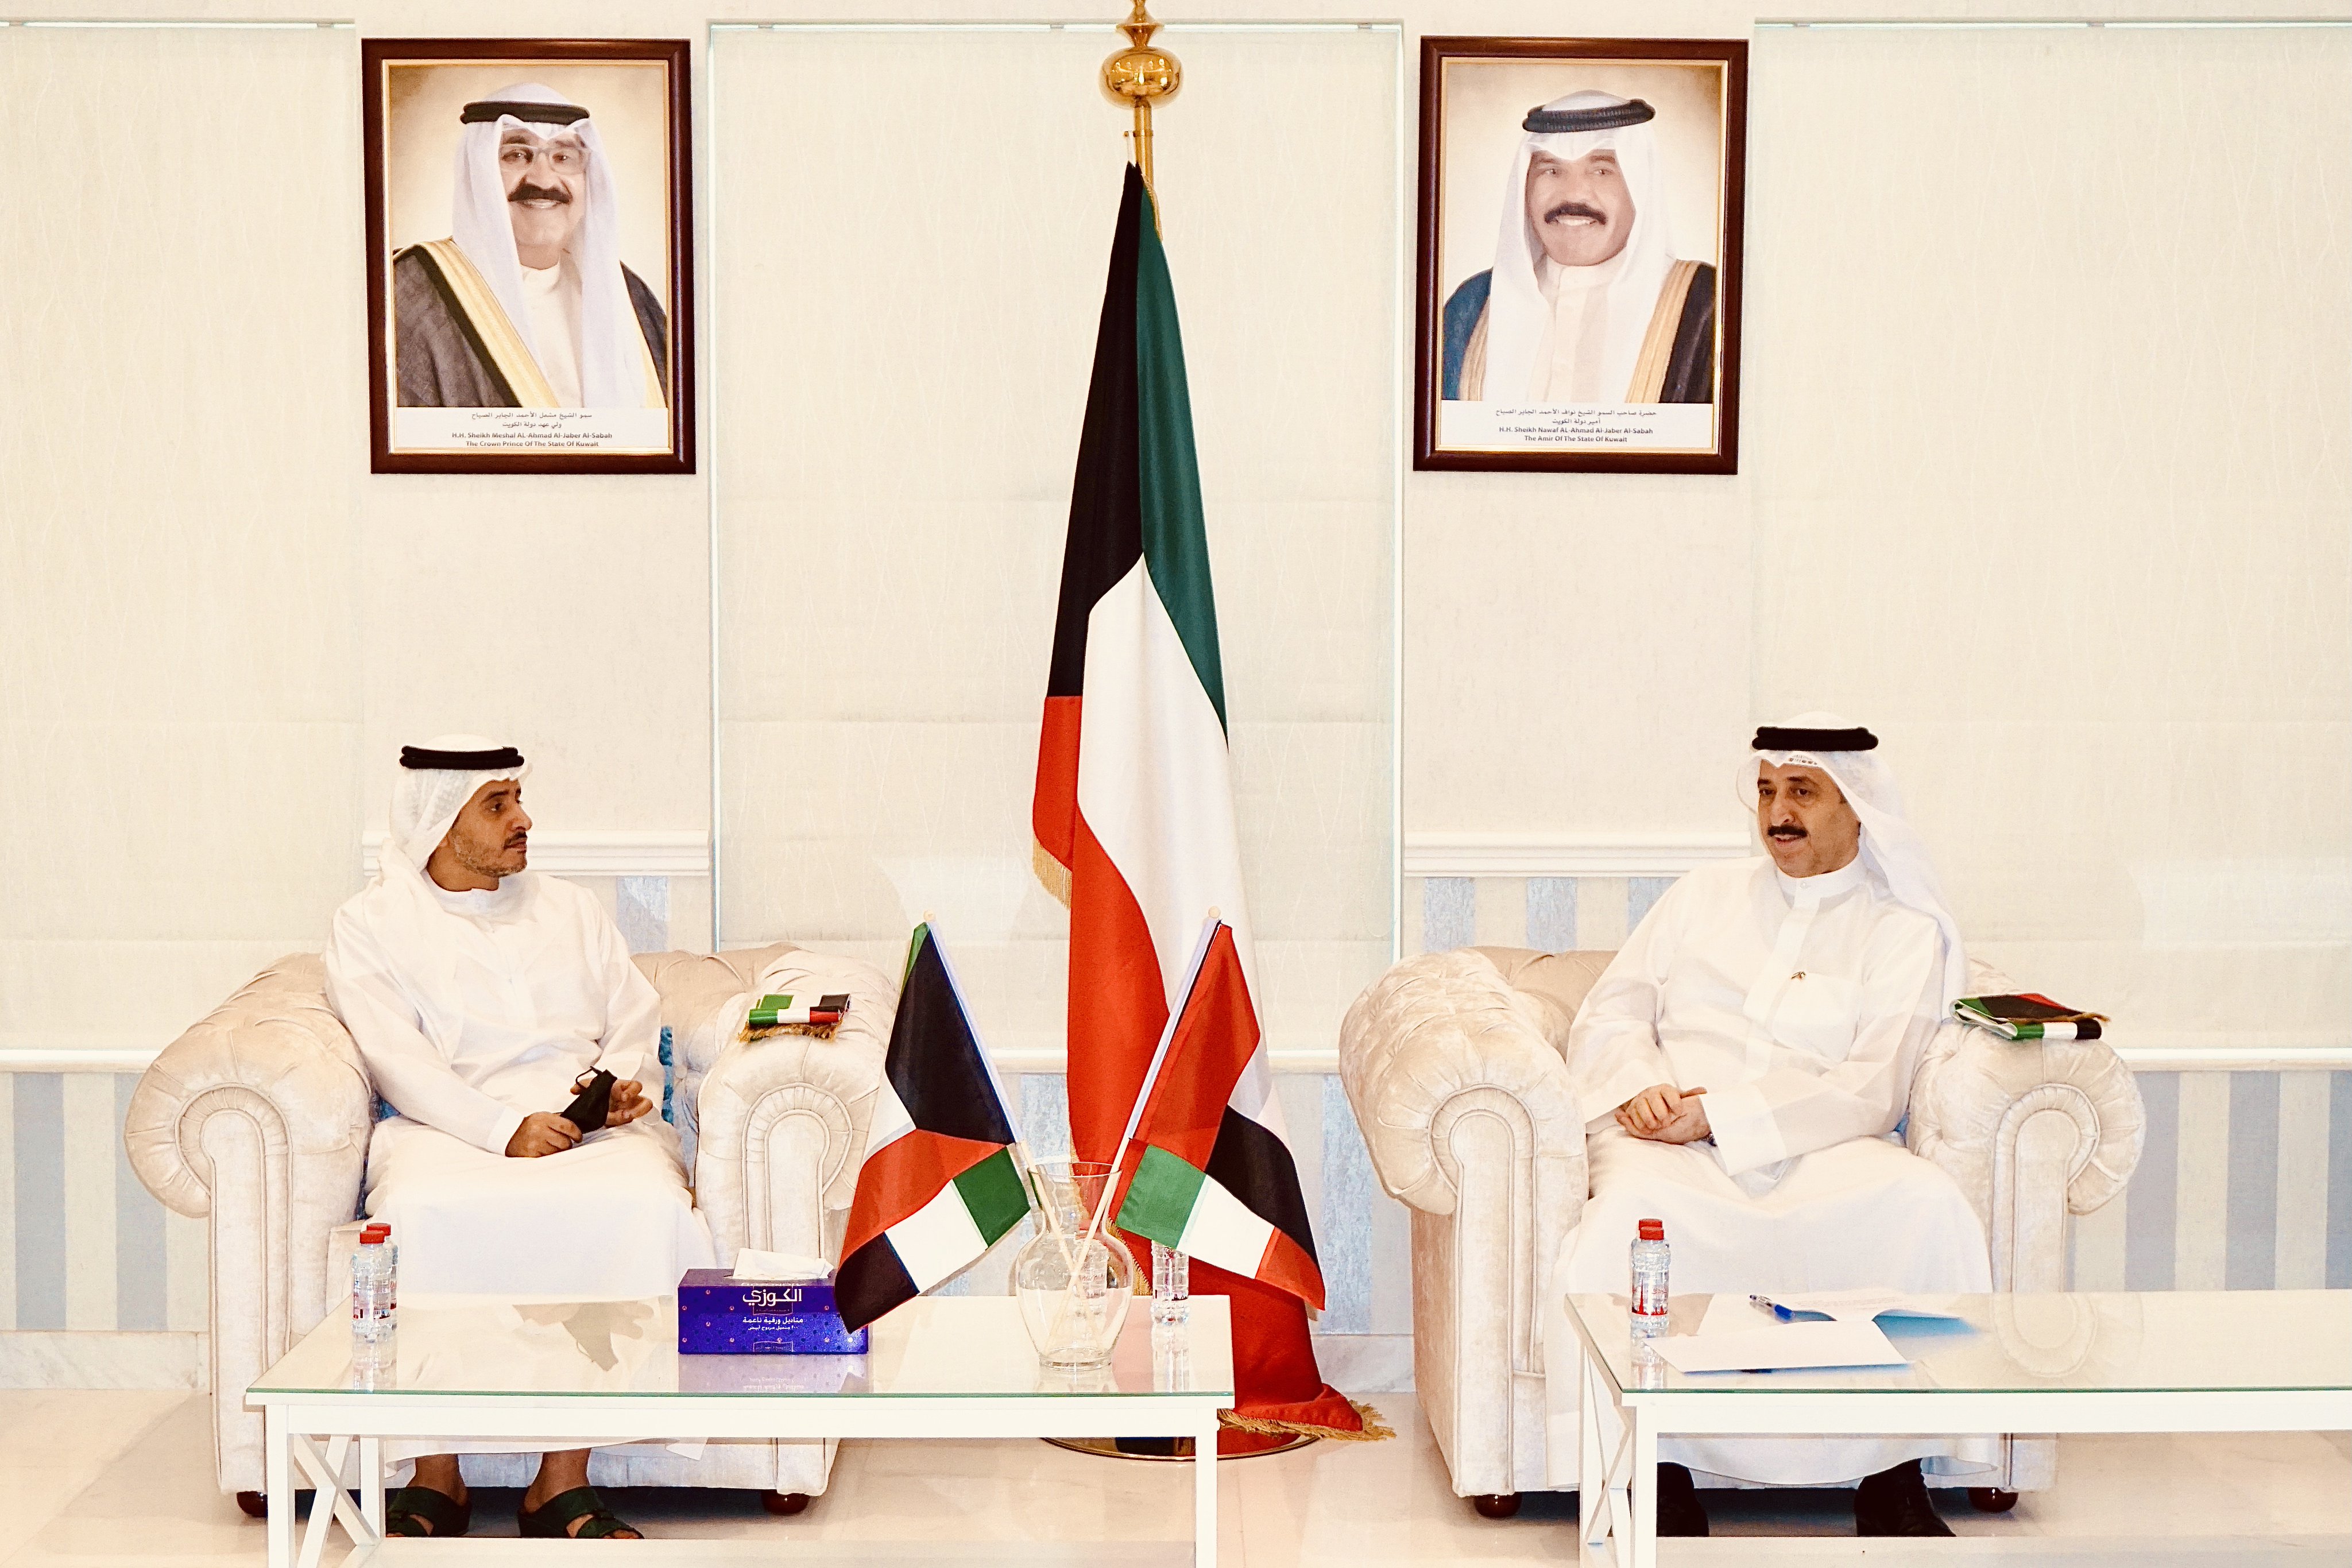 القنصل الكويتي في دبي: الإمارات والكويت يجمعهما التاريخ والارث المشترك